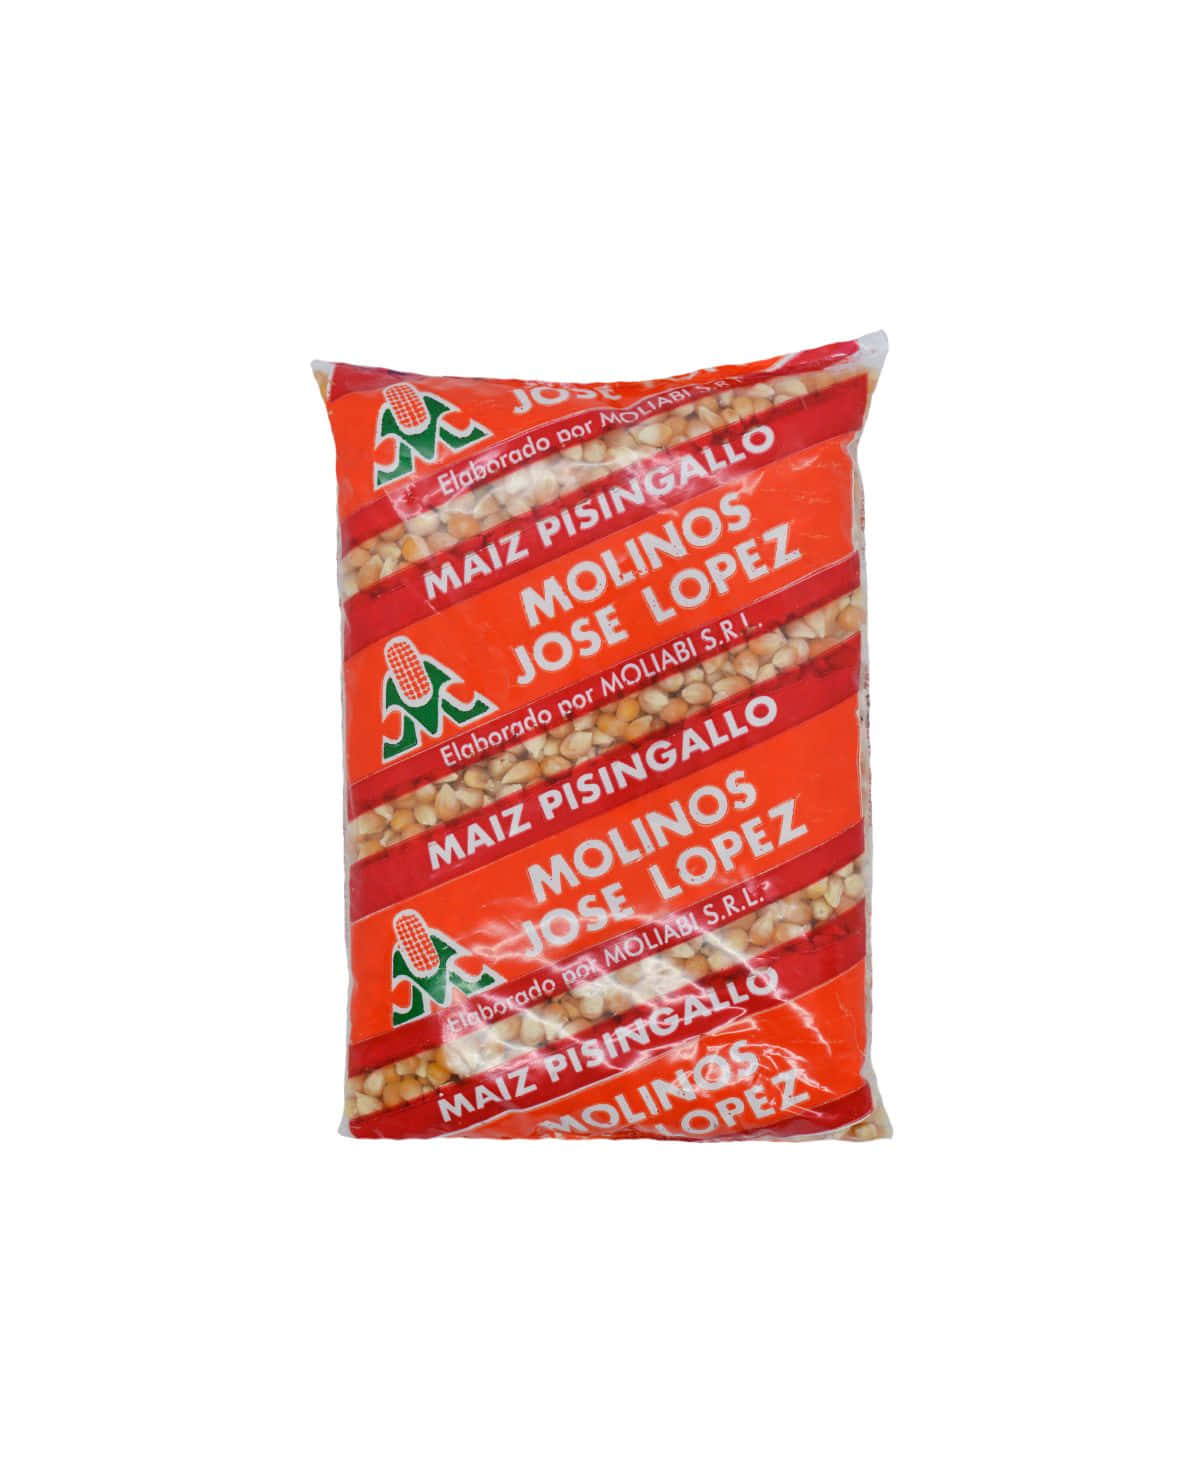 Maiz Pisingallo Molinos Jose Lopez 500 Gr